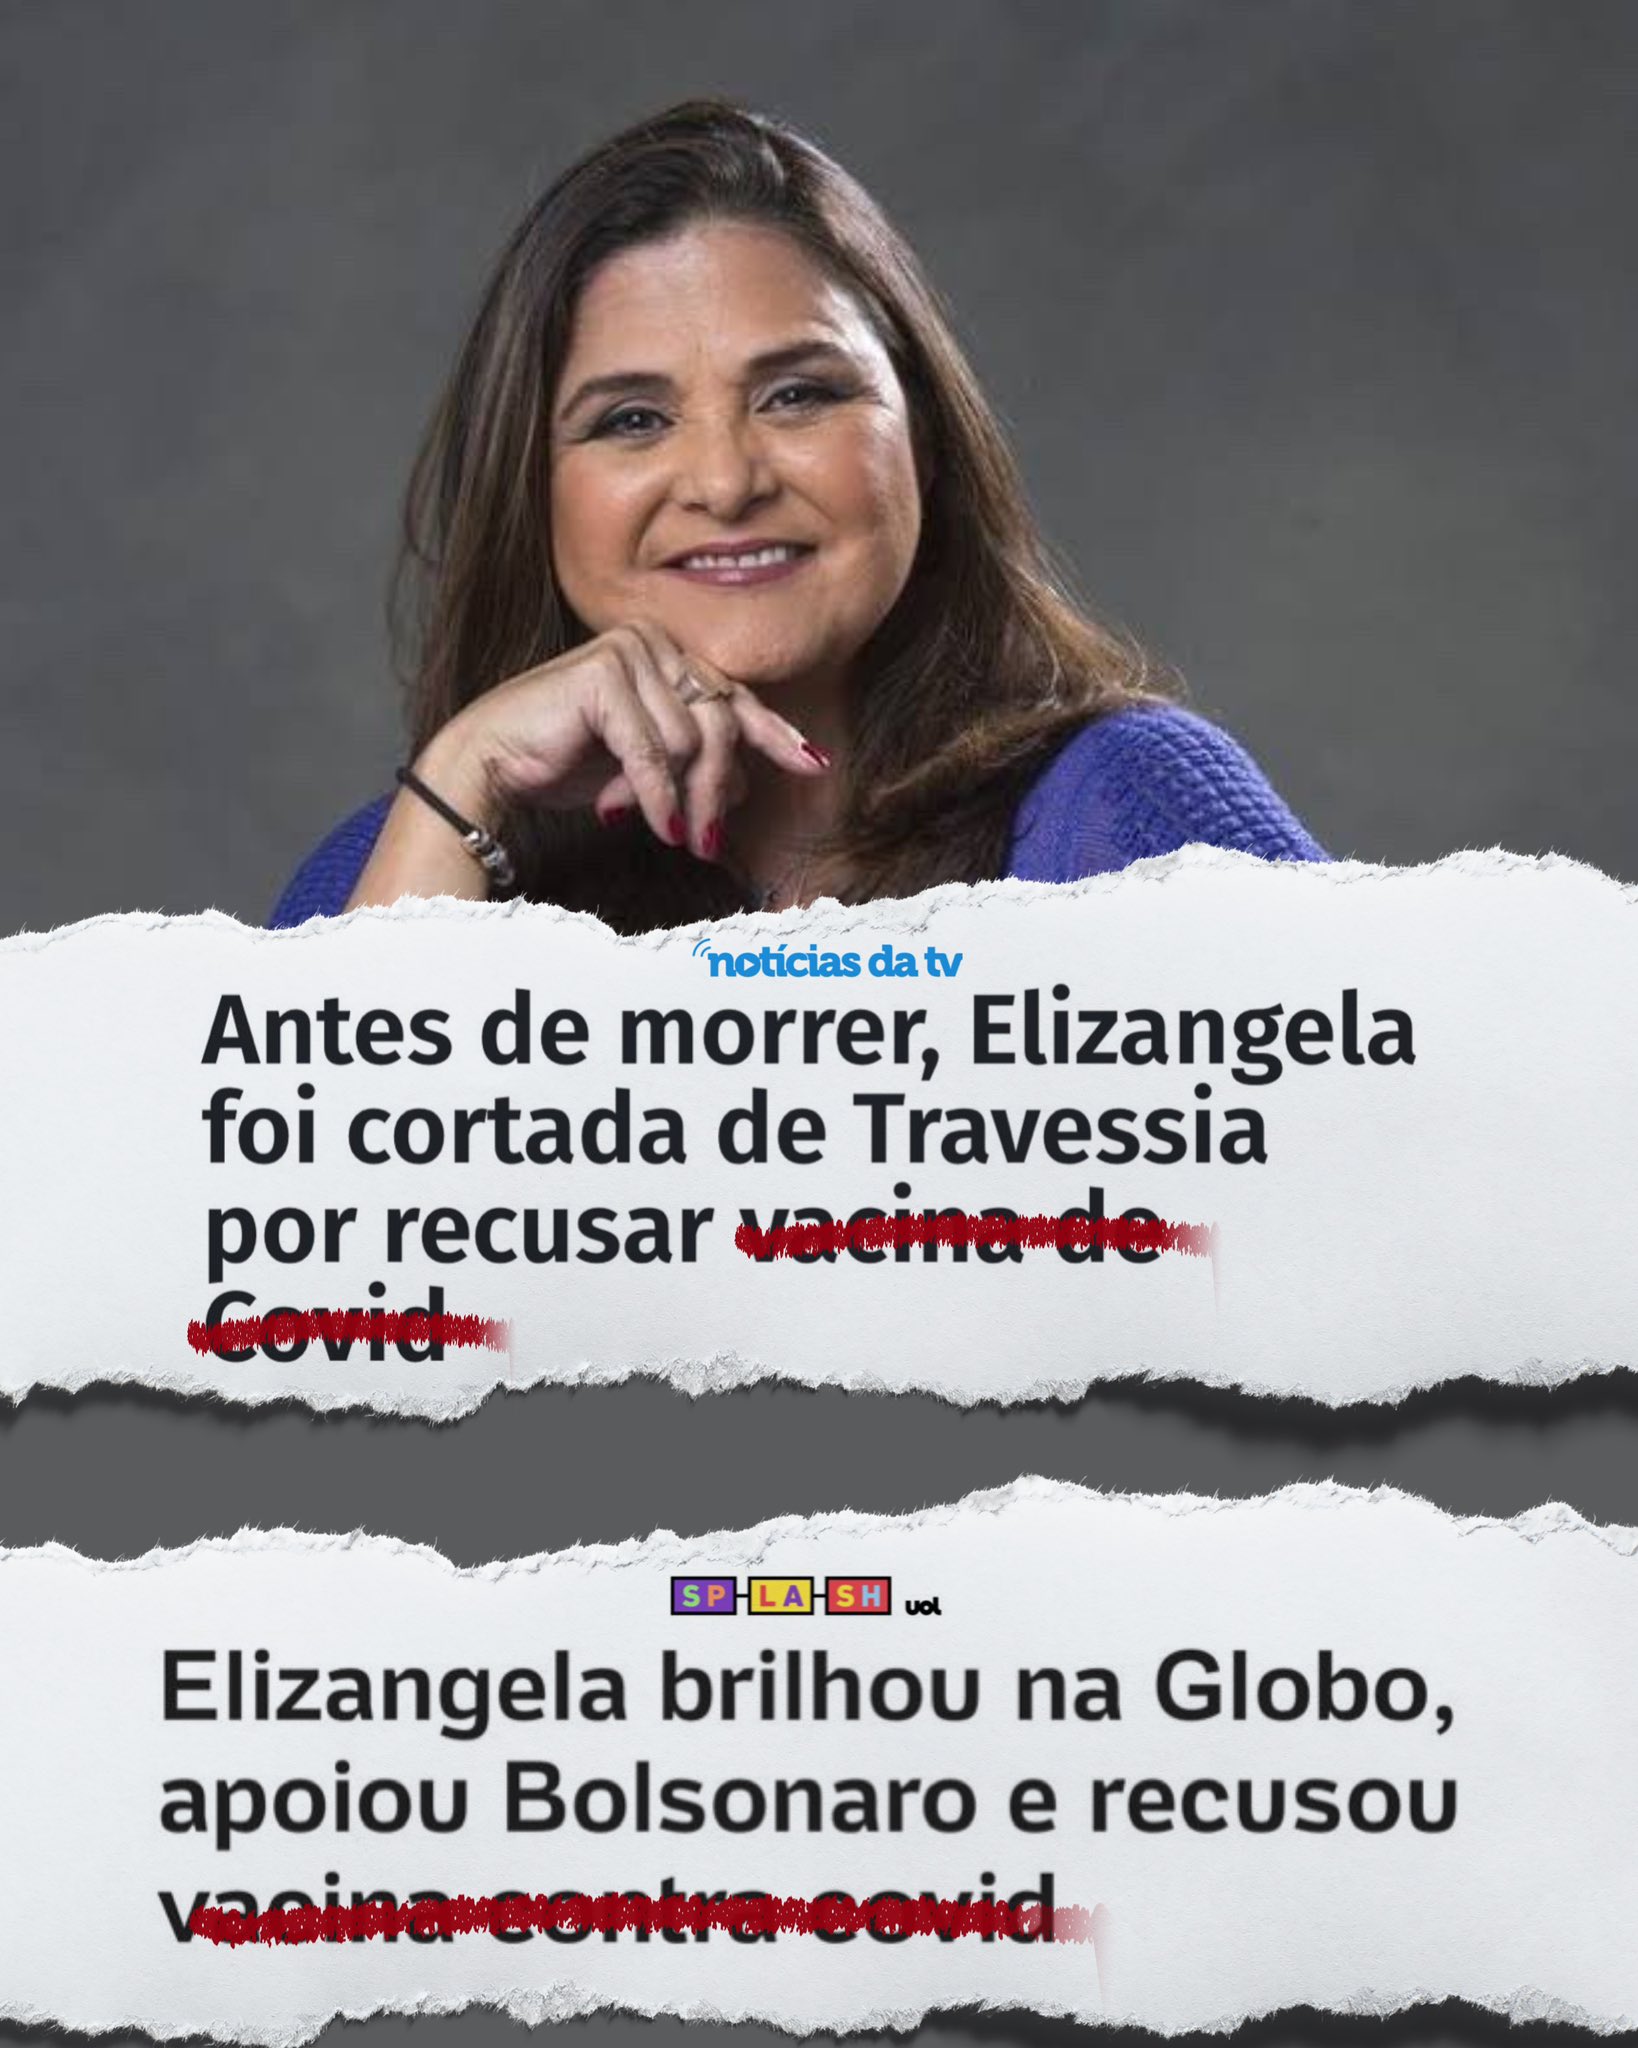 De olho nas eleições, GloboNews prepara mudanças e saída de